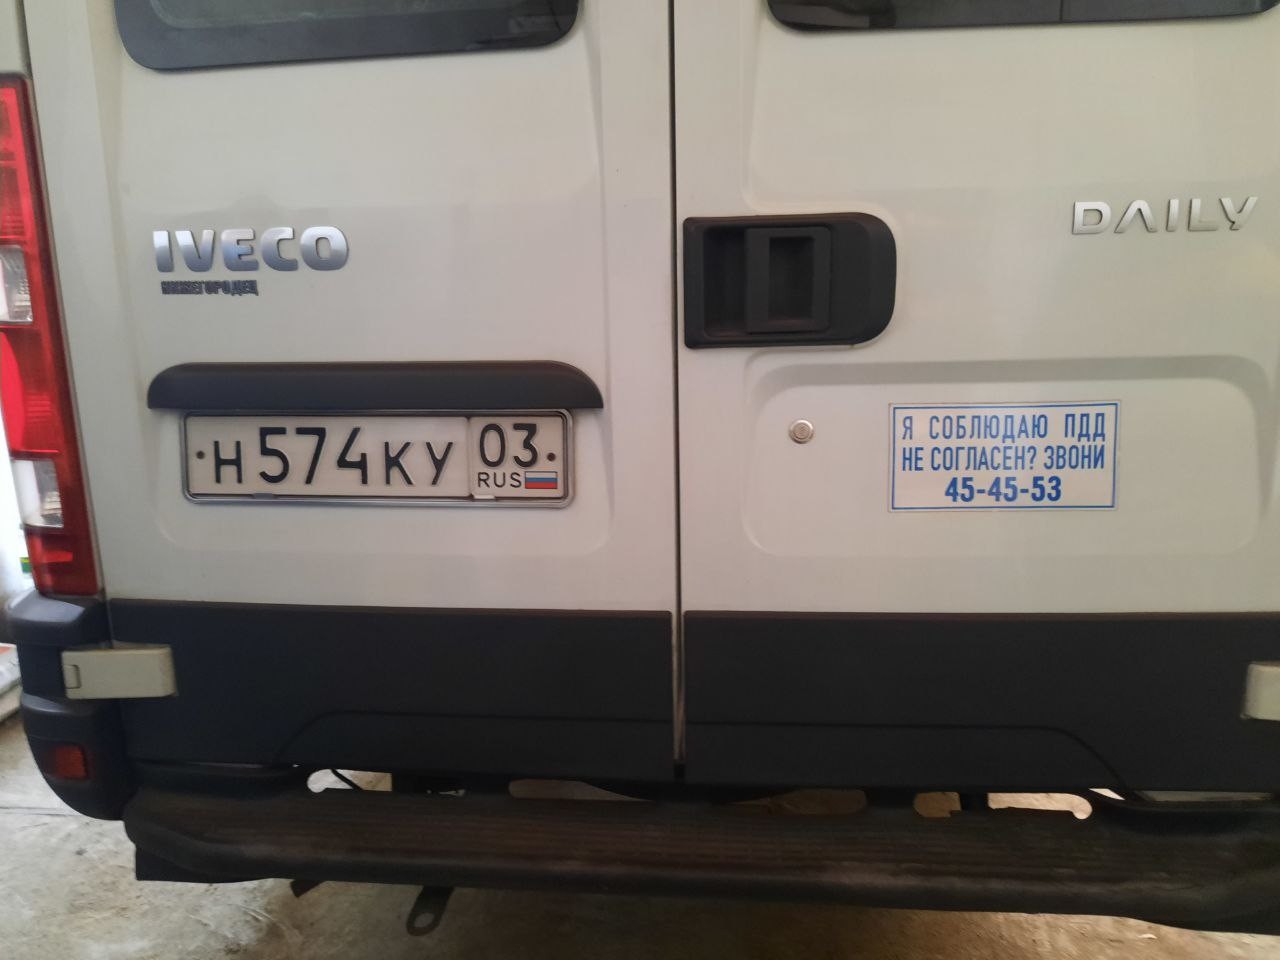 Транспортное средство Iveco Daily, 2013 года выпуска, государственный номер Н574КУ03, идентификацион